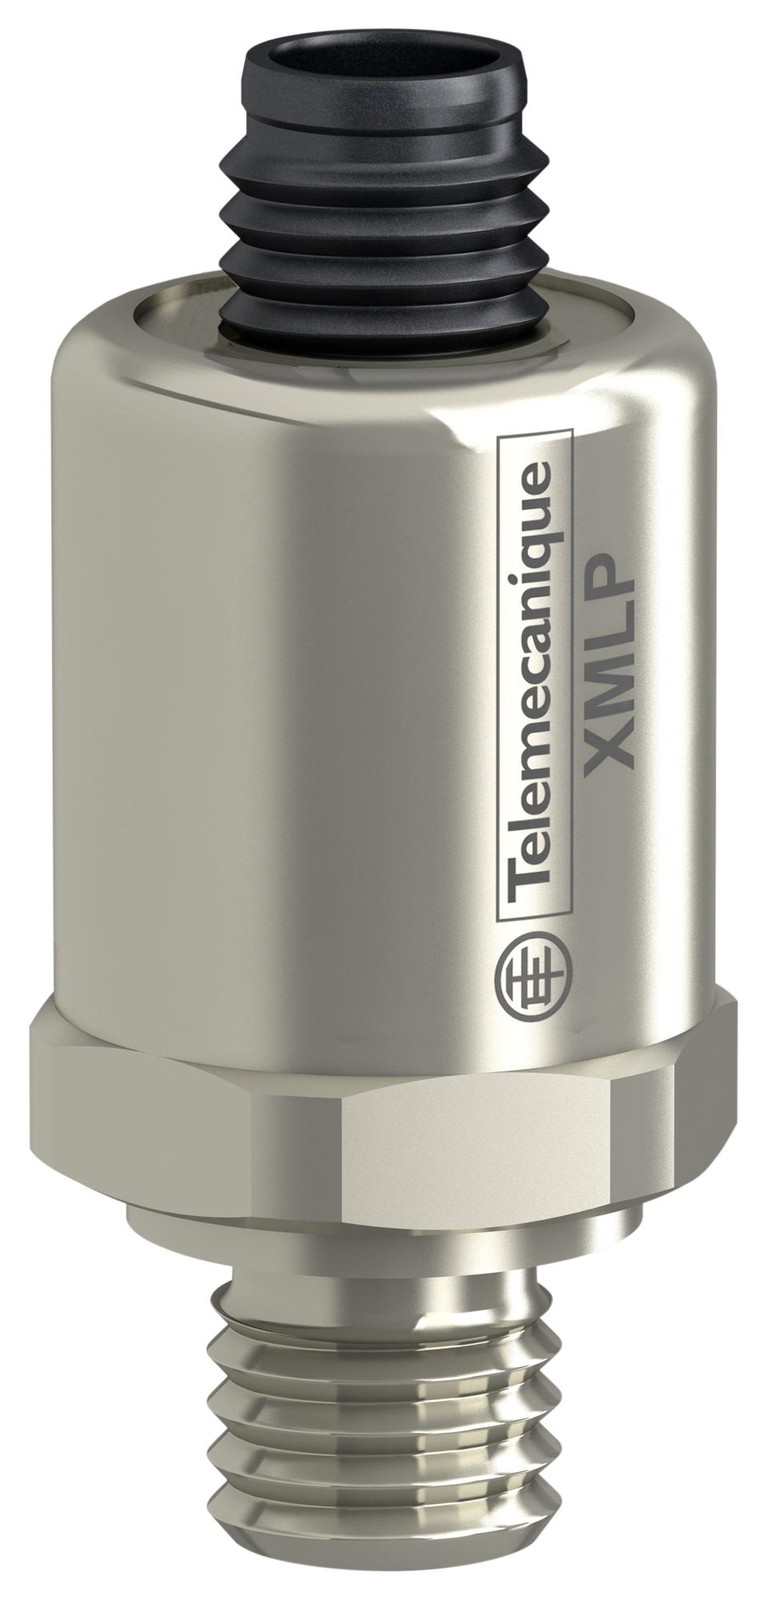 Telemecanique Sensors Xmlp160Bd21F Pressure Transmitter, 160Bar, 24Vdc